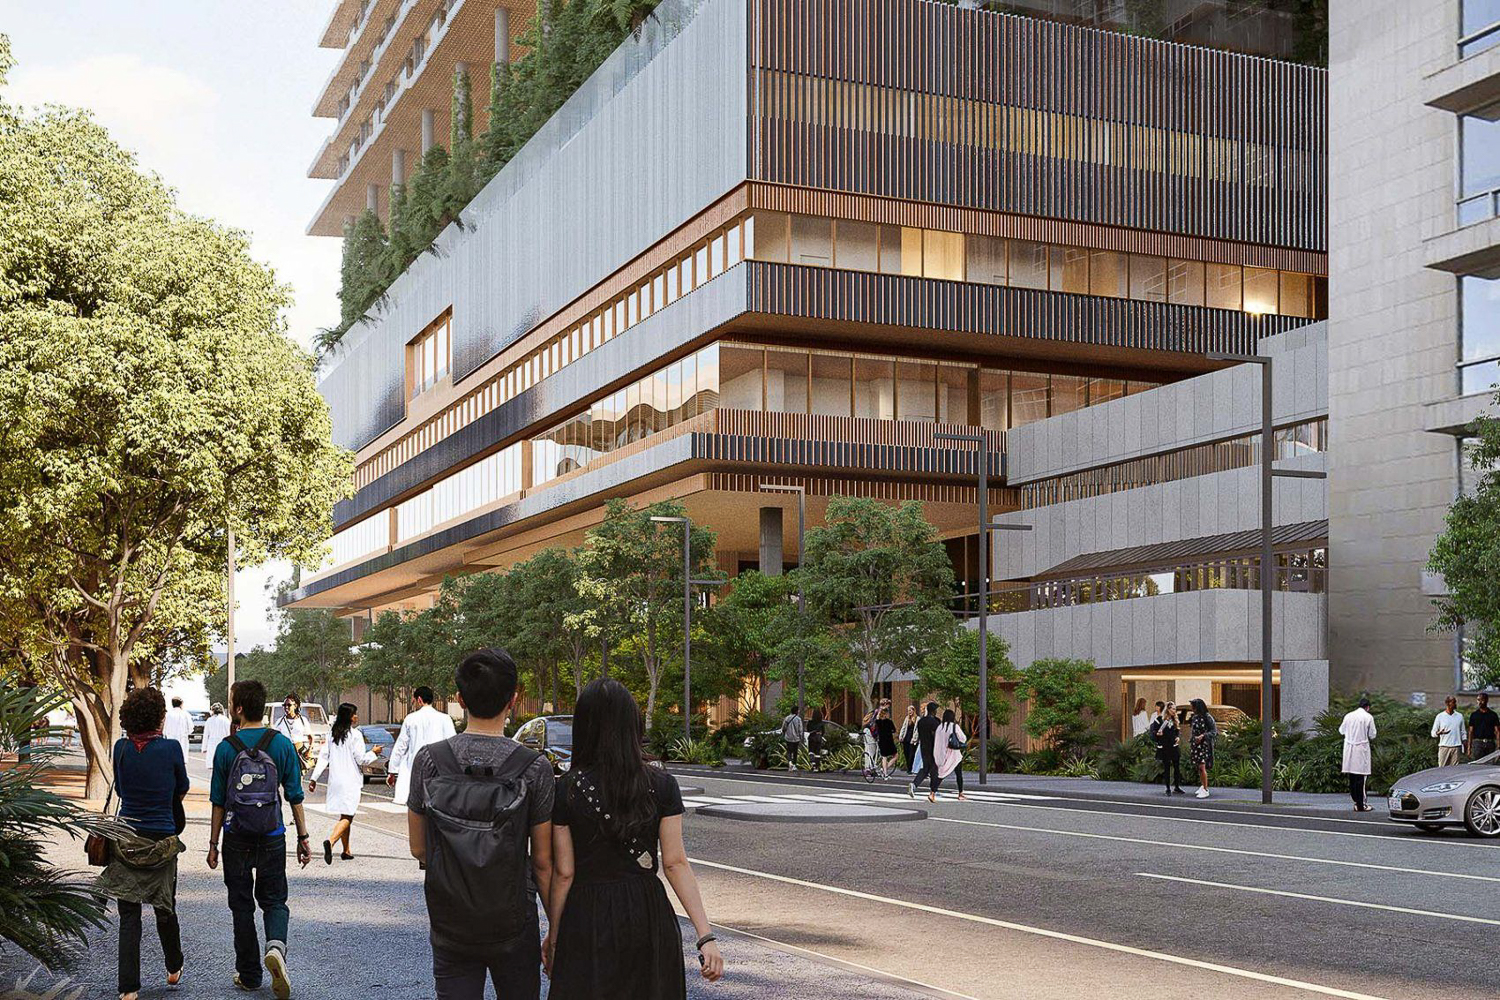 New Hospital Parnassus Heights street view, rendering by Herzog & de Meuron